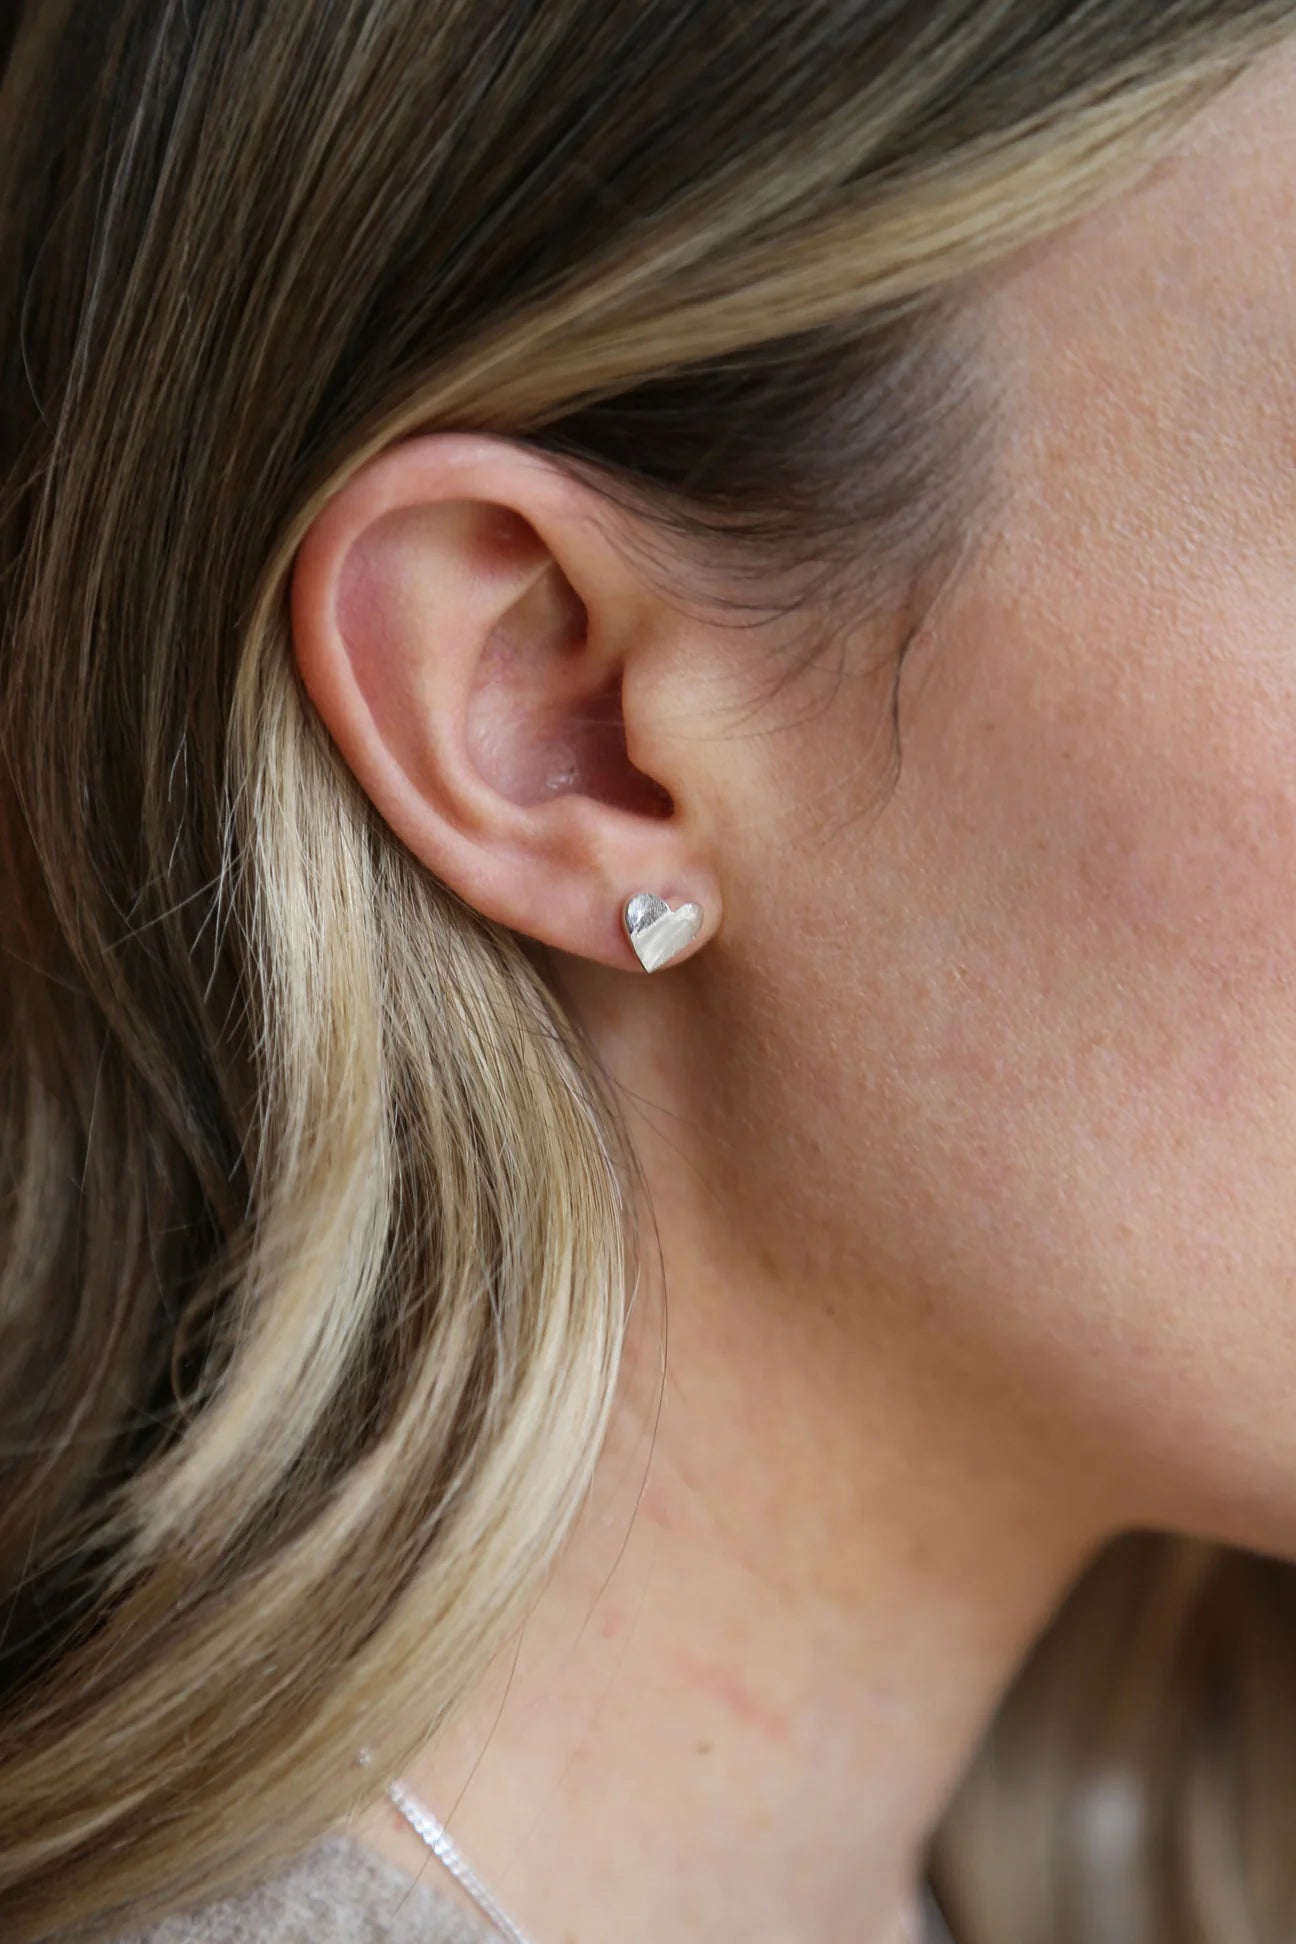 Sweetheart Earrings Silver